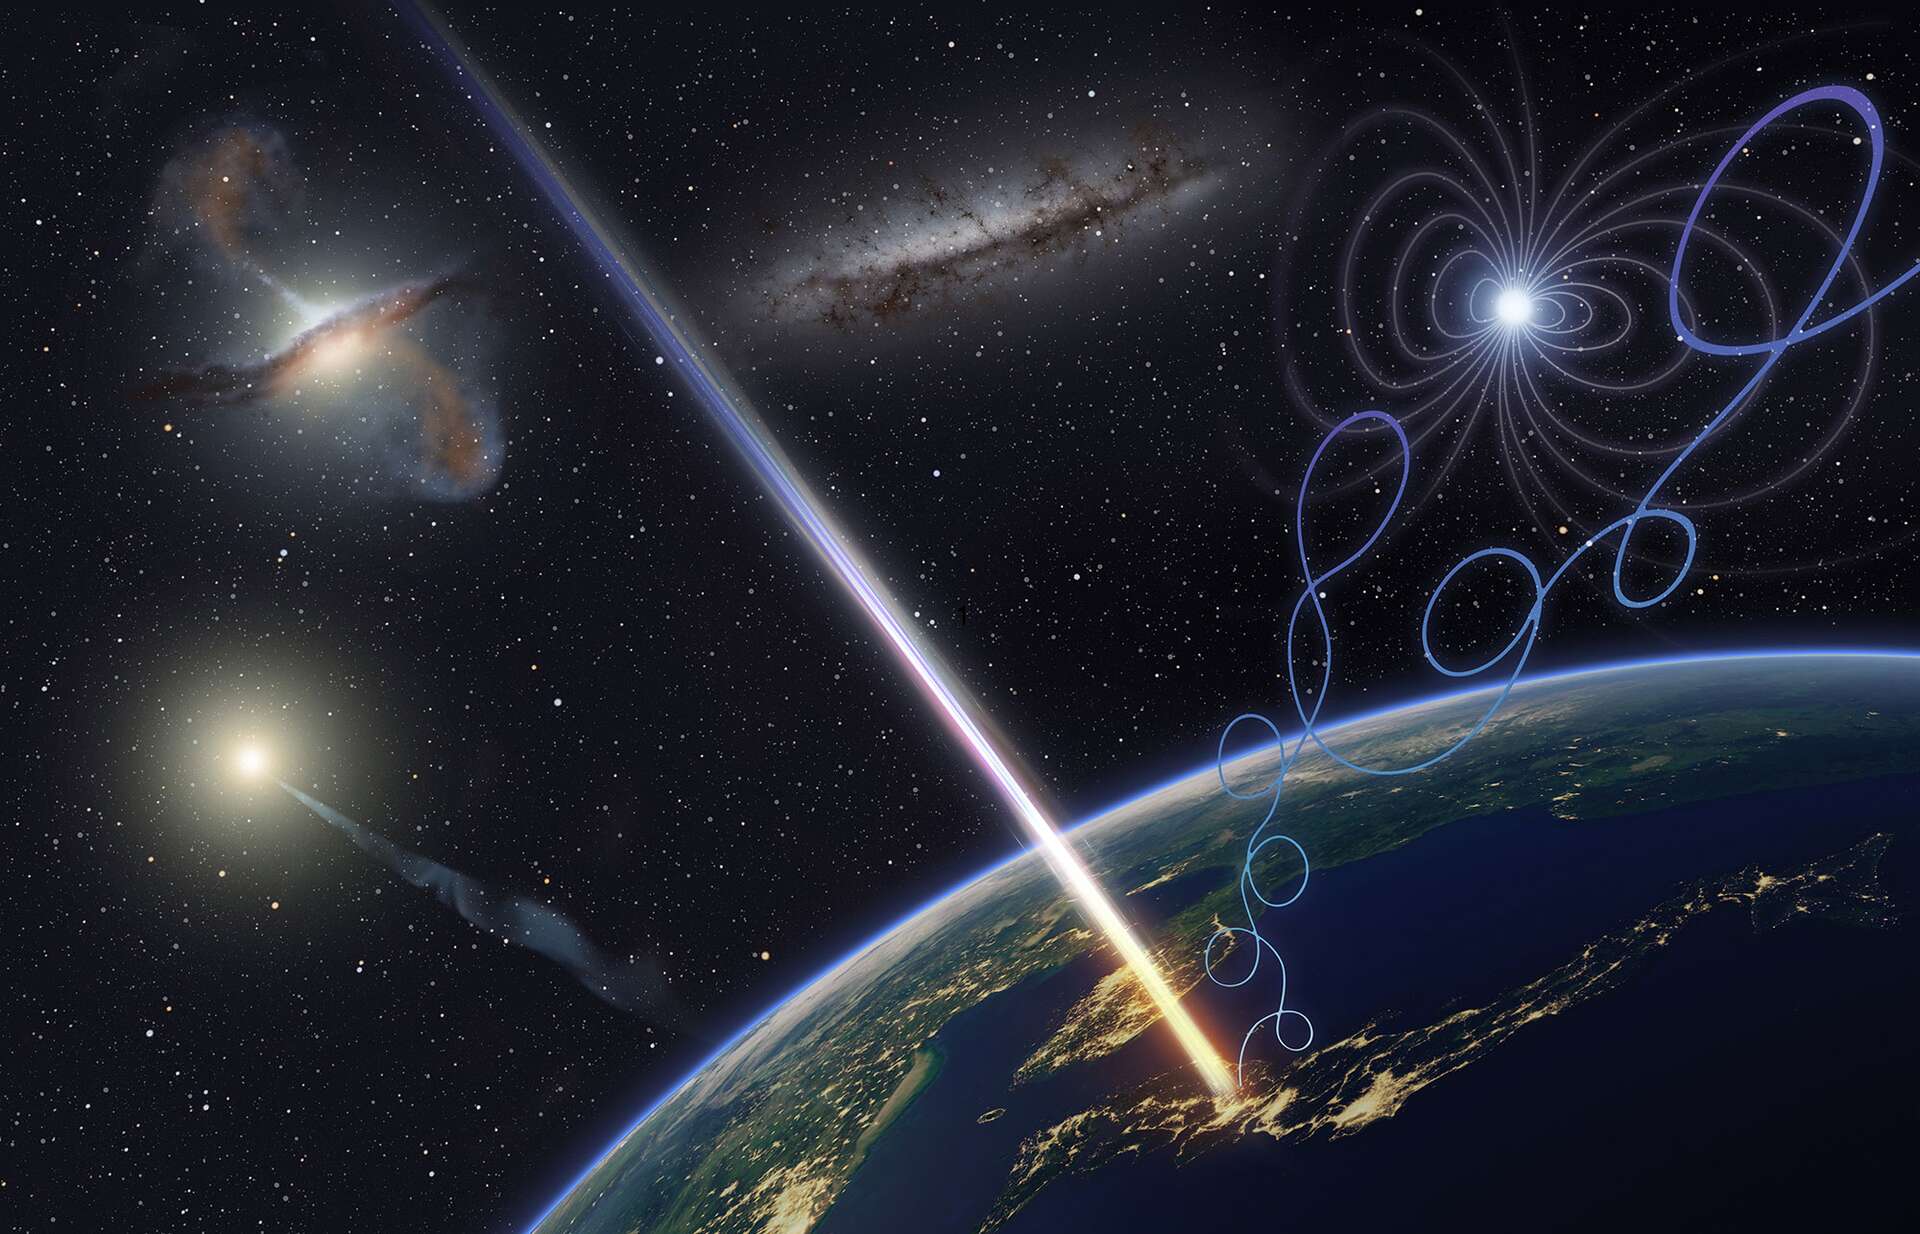 La Terre a été frappée par des particules cosmiques d'origine inconnue des dizaines de millions de fois plus énergétiques qu'au LHC